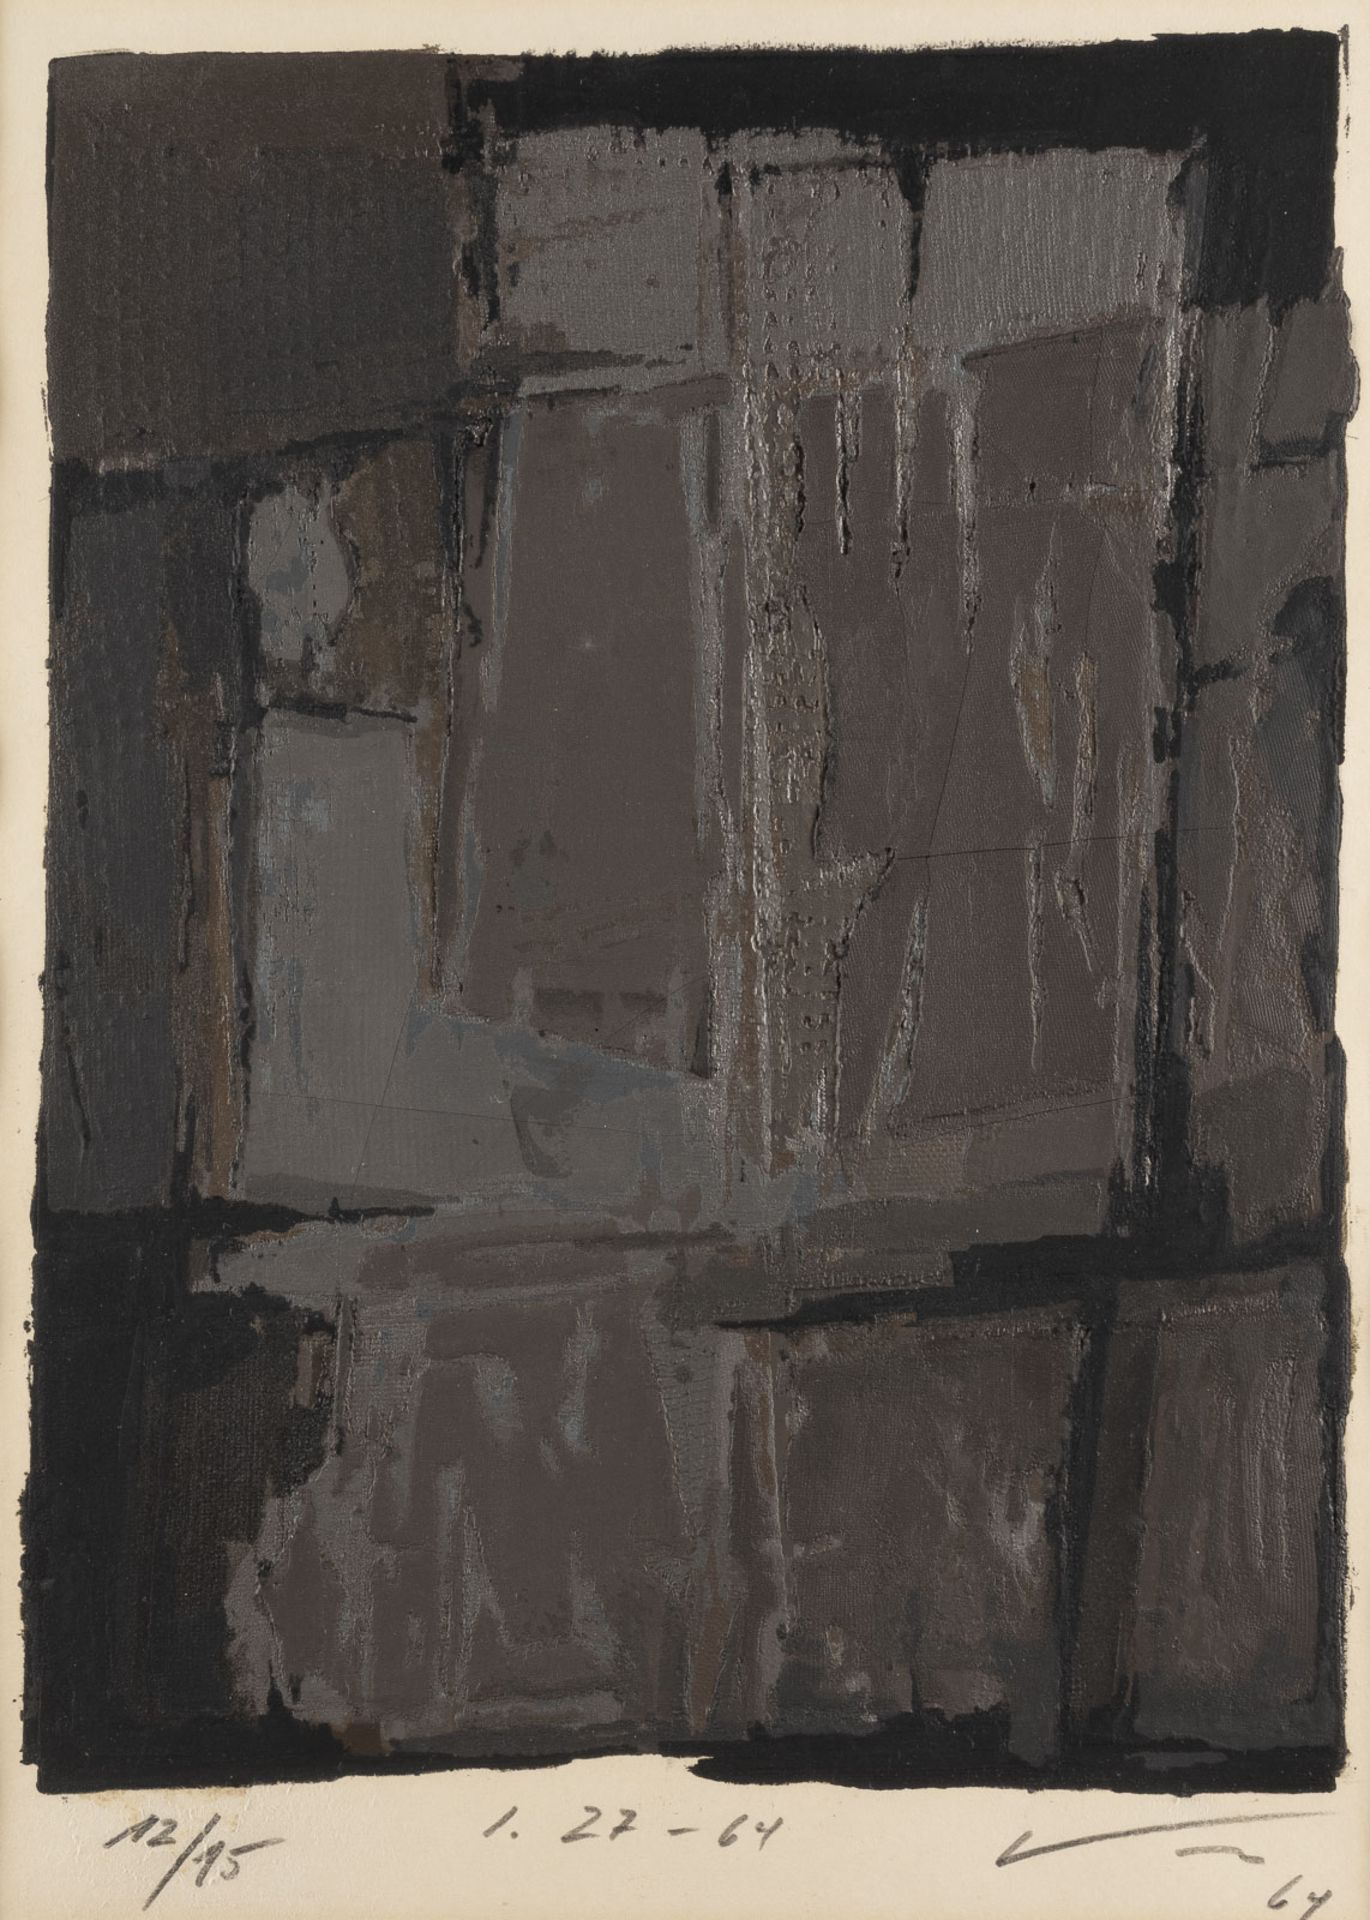 MODERNER GRAFIKER 'I. 27-64' (1964)